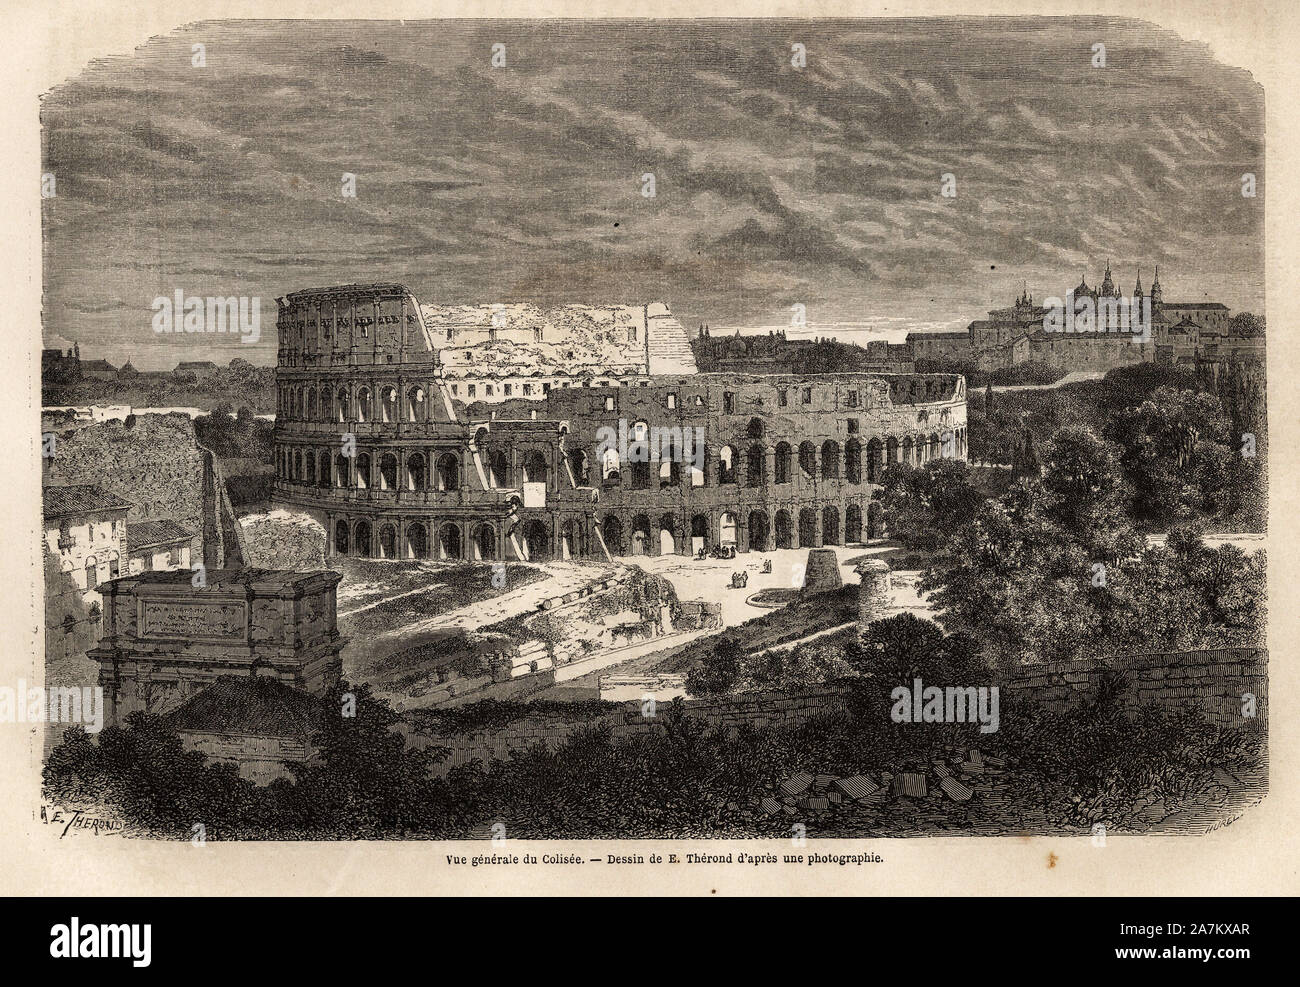 Vue generale du Colisee, une Rome, l'amphithéâtre Flavien acheve en 80, sous le regne de l'empereur Titus, pouvant accueillir jusqu'a 75 000 personnes, il Banque D'Images